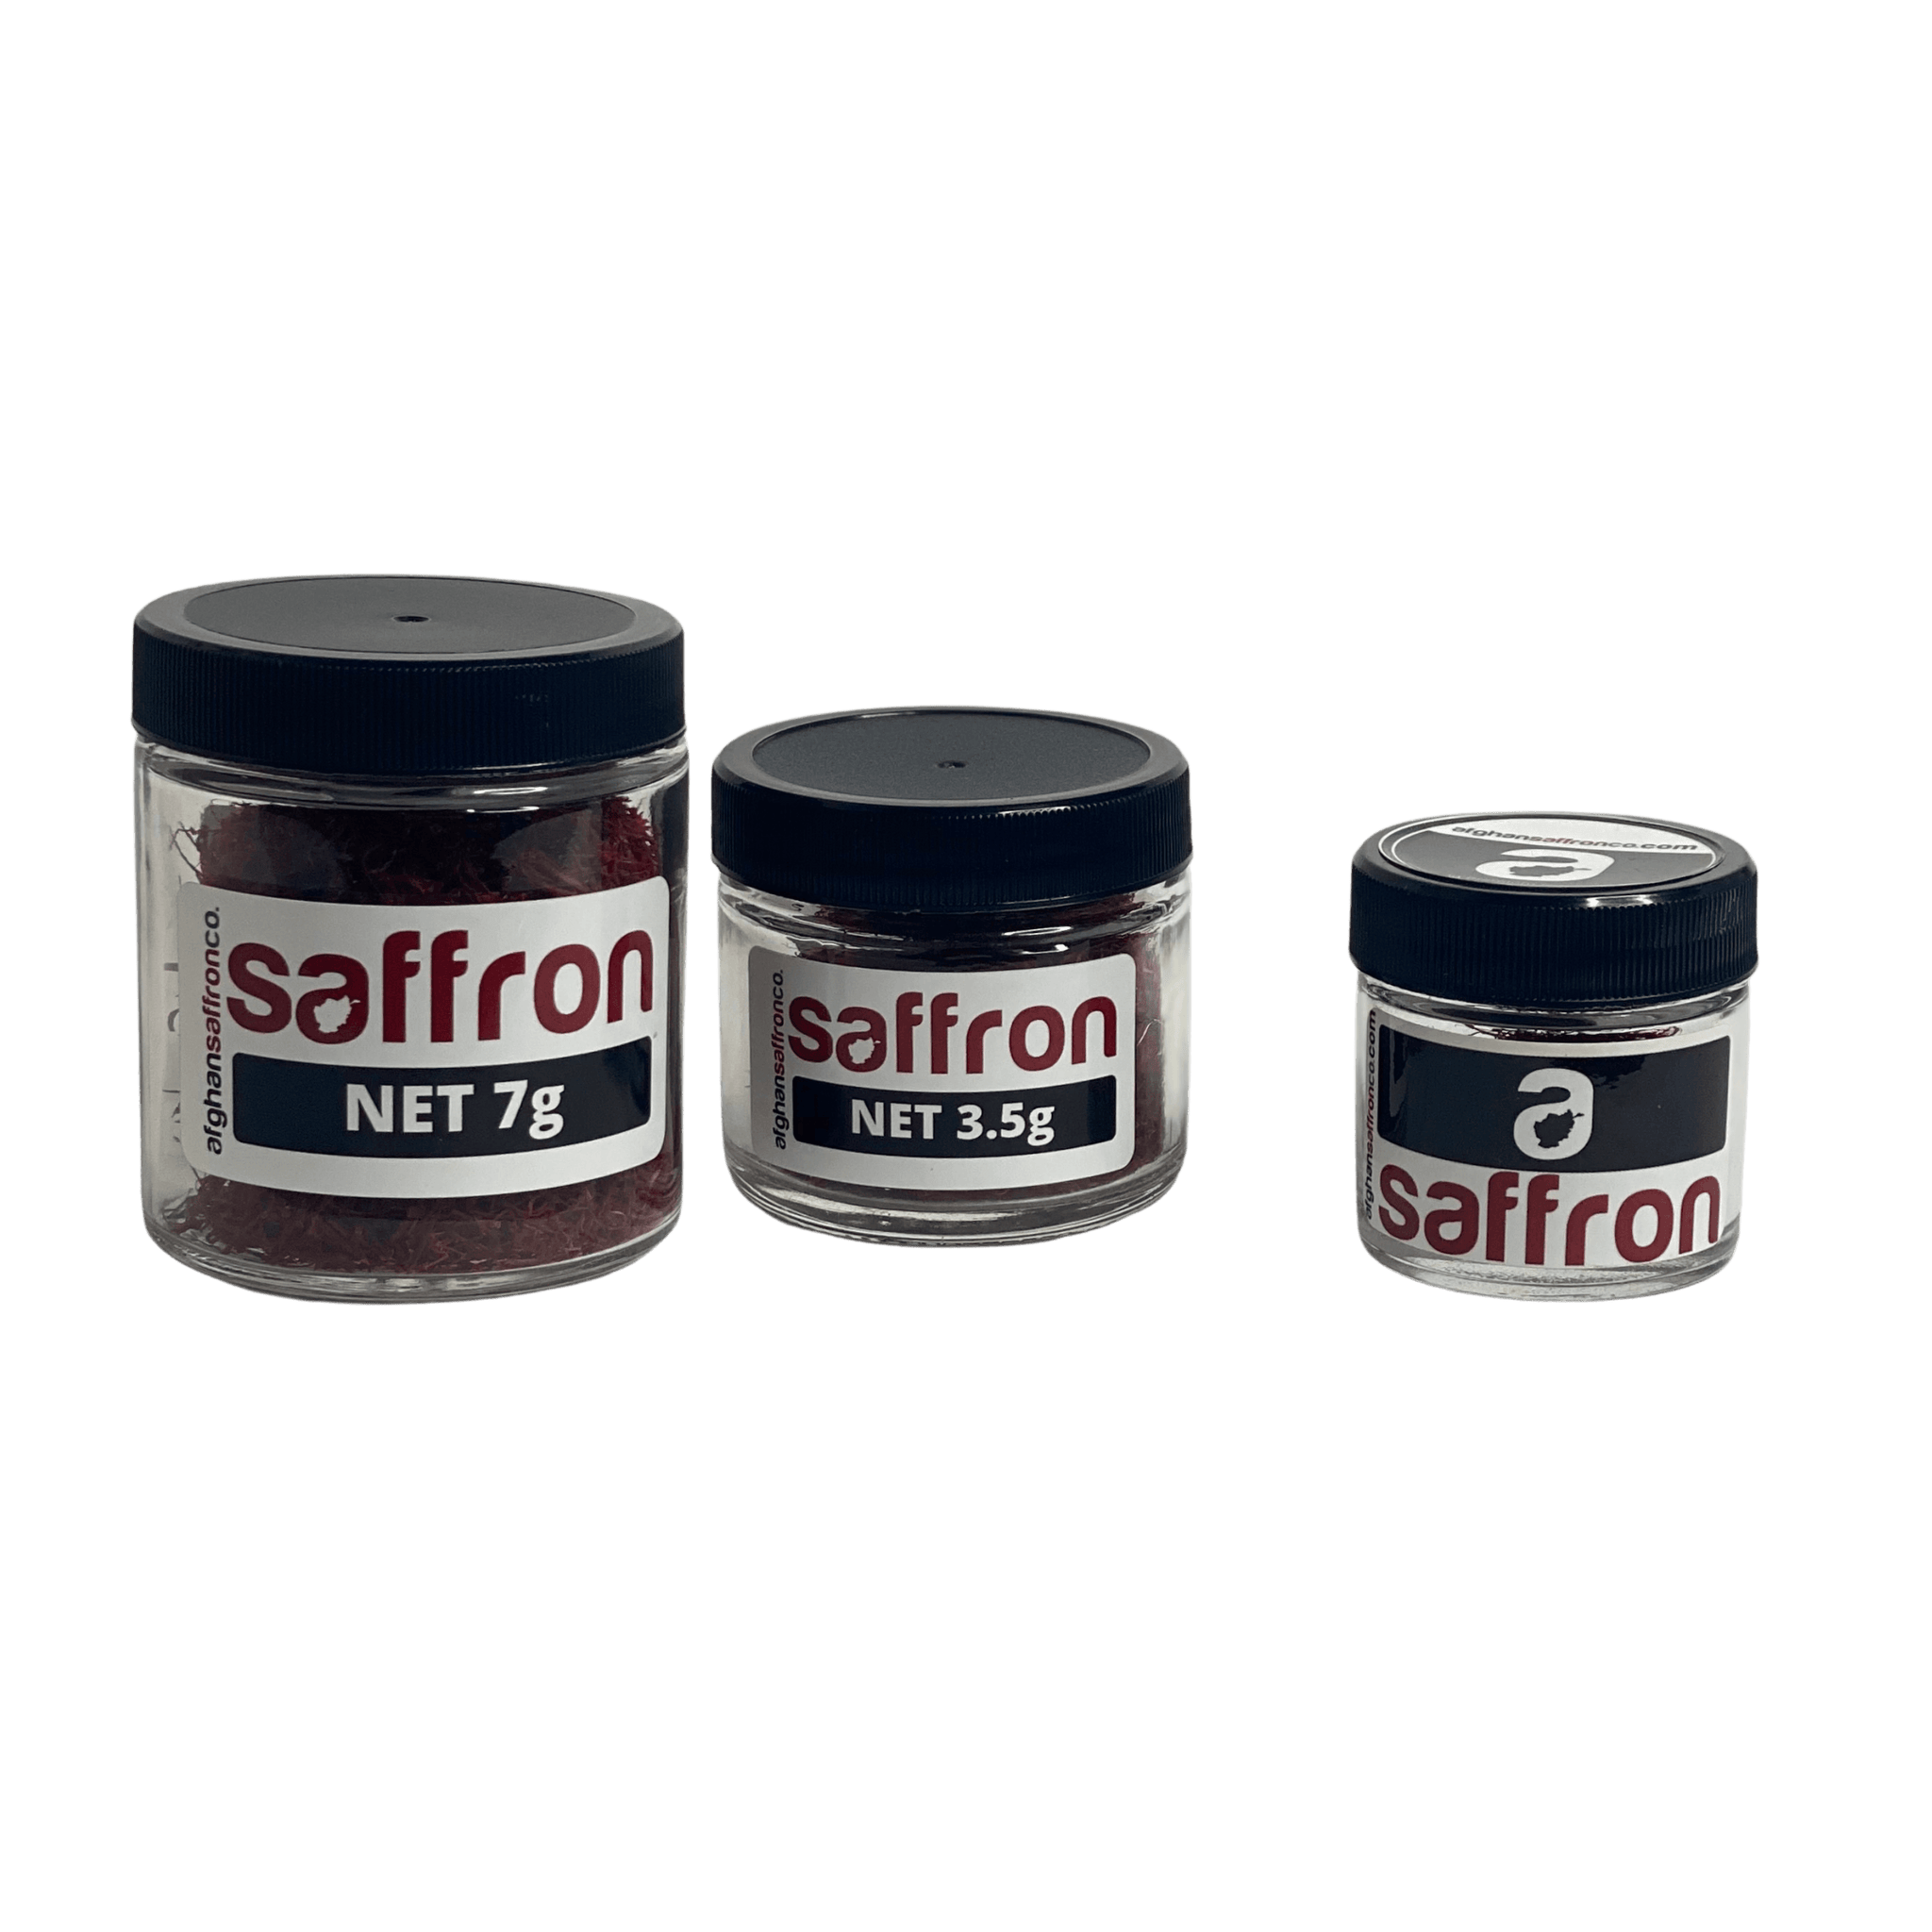 14 Grams Saffron (2qty. 7g Jars) - Afghan Saffron Co. saffron spice from Afghanistan h